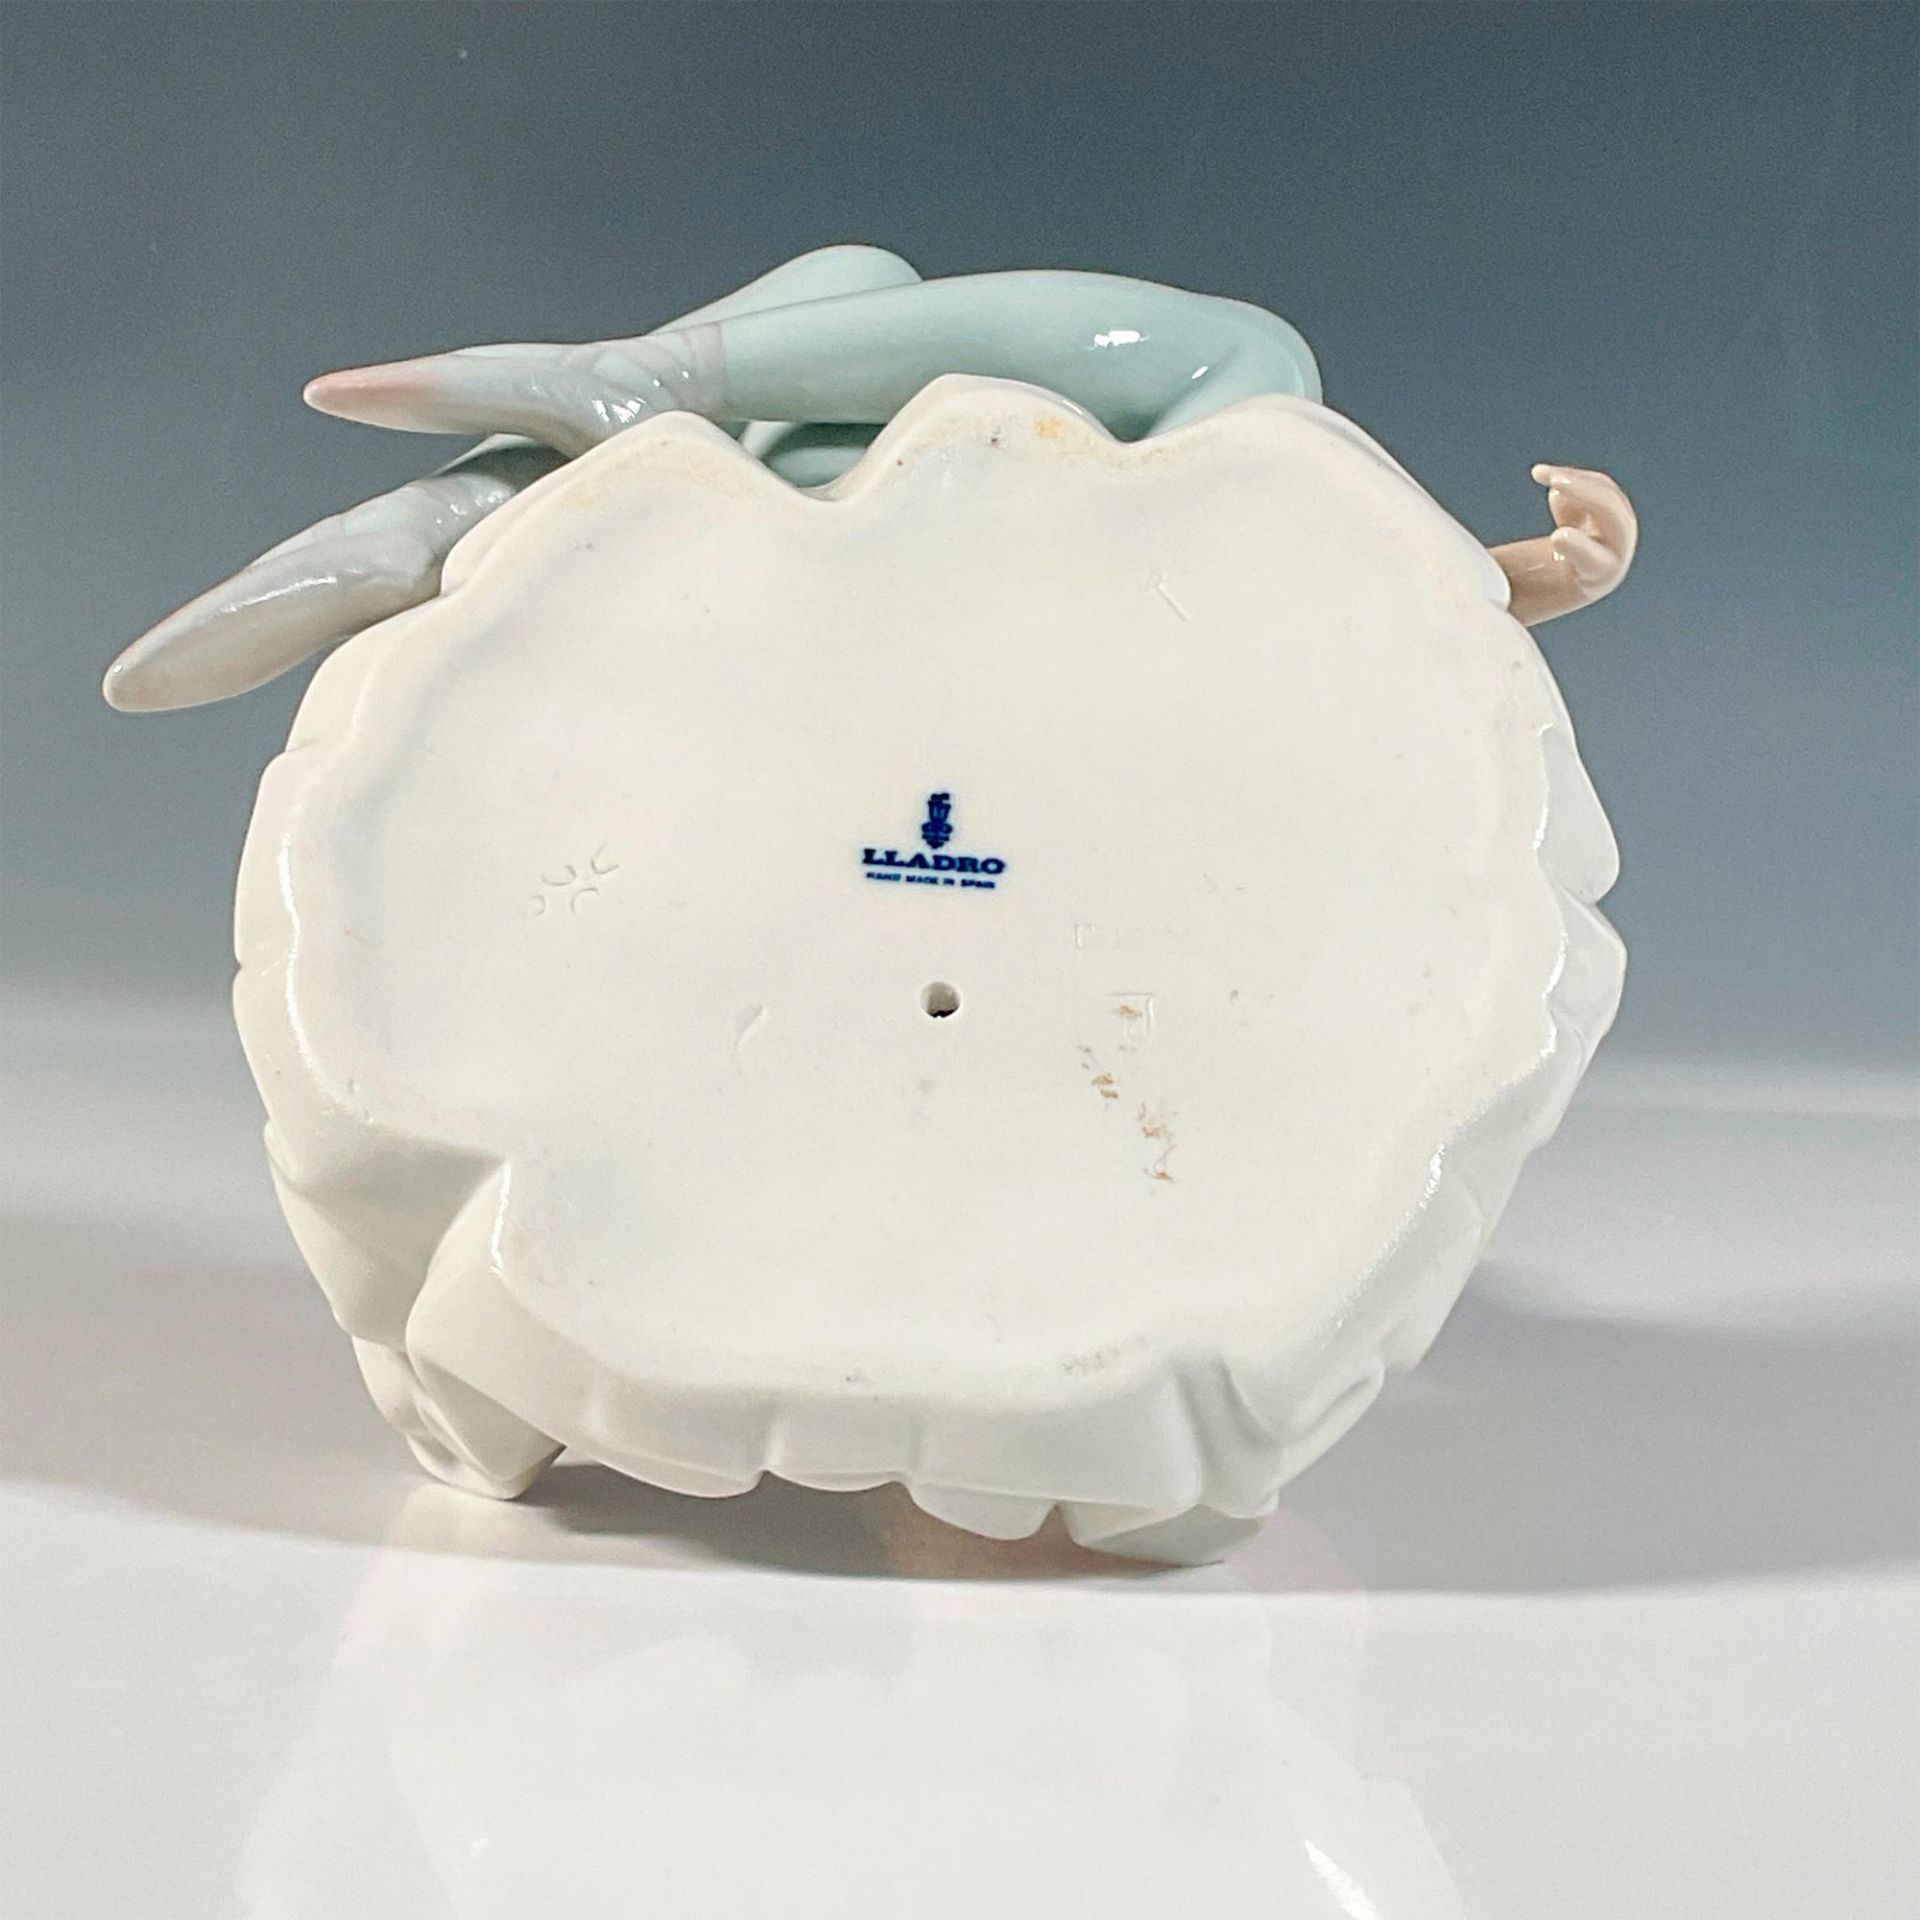 Shelley 1001357 - Lladro Porcelain Figurine - Bild 3 aus 3